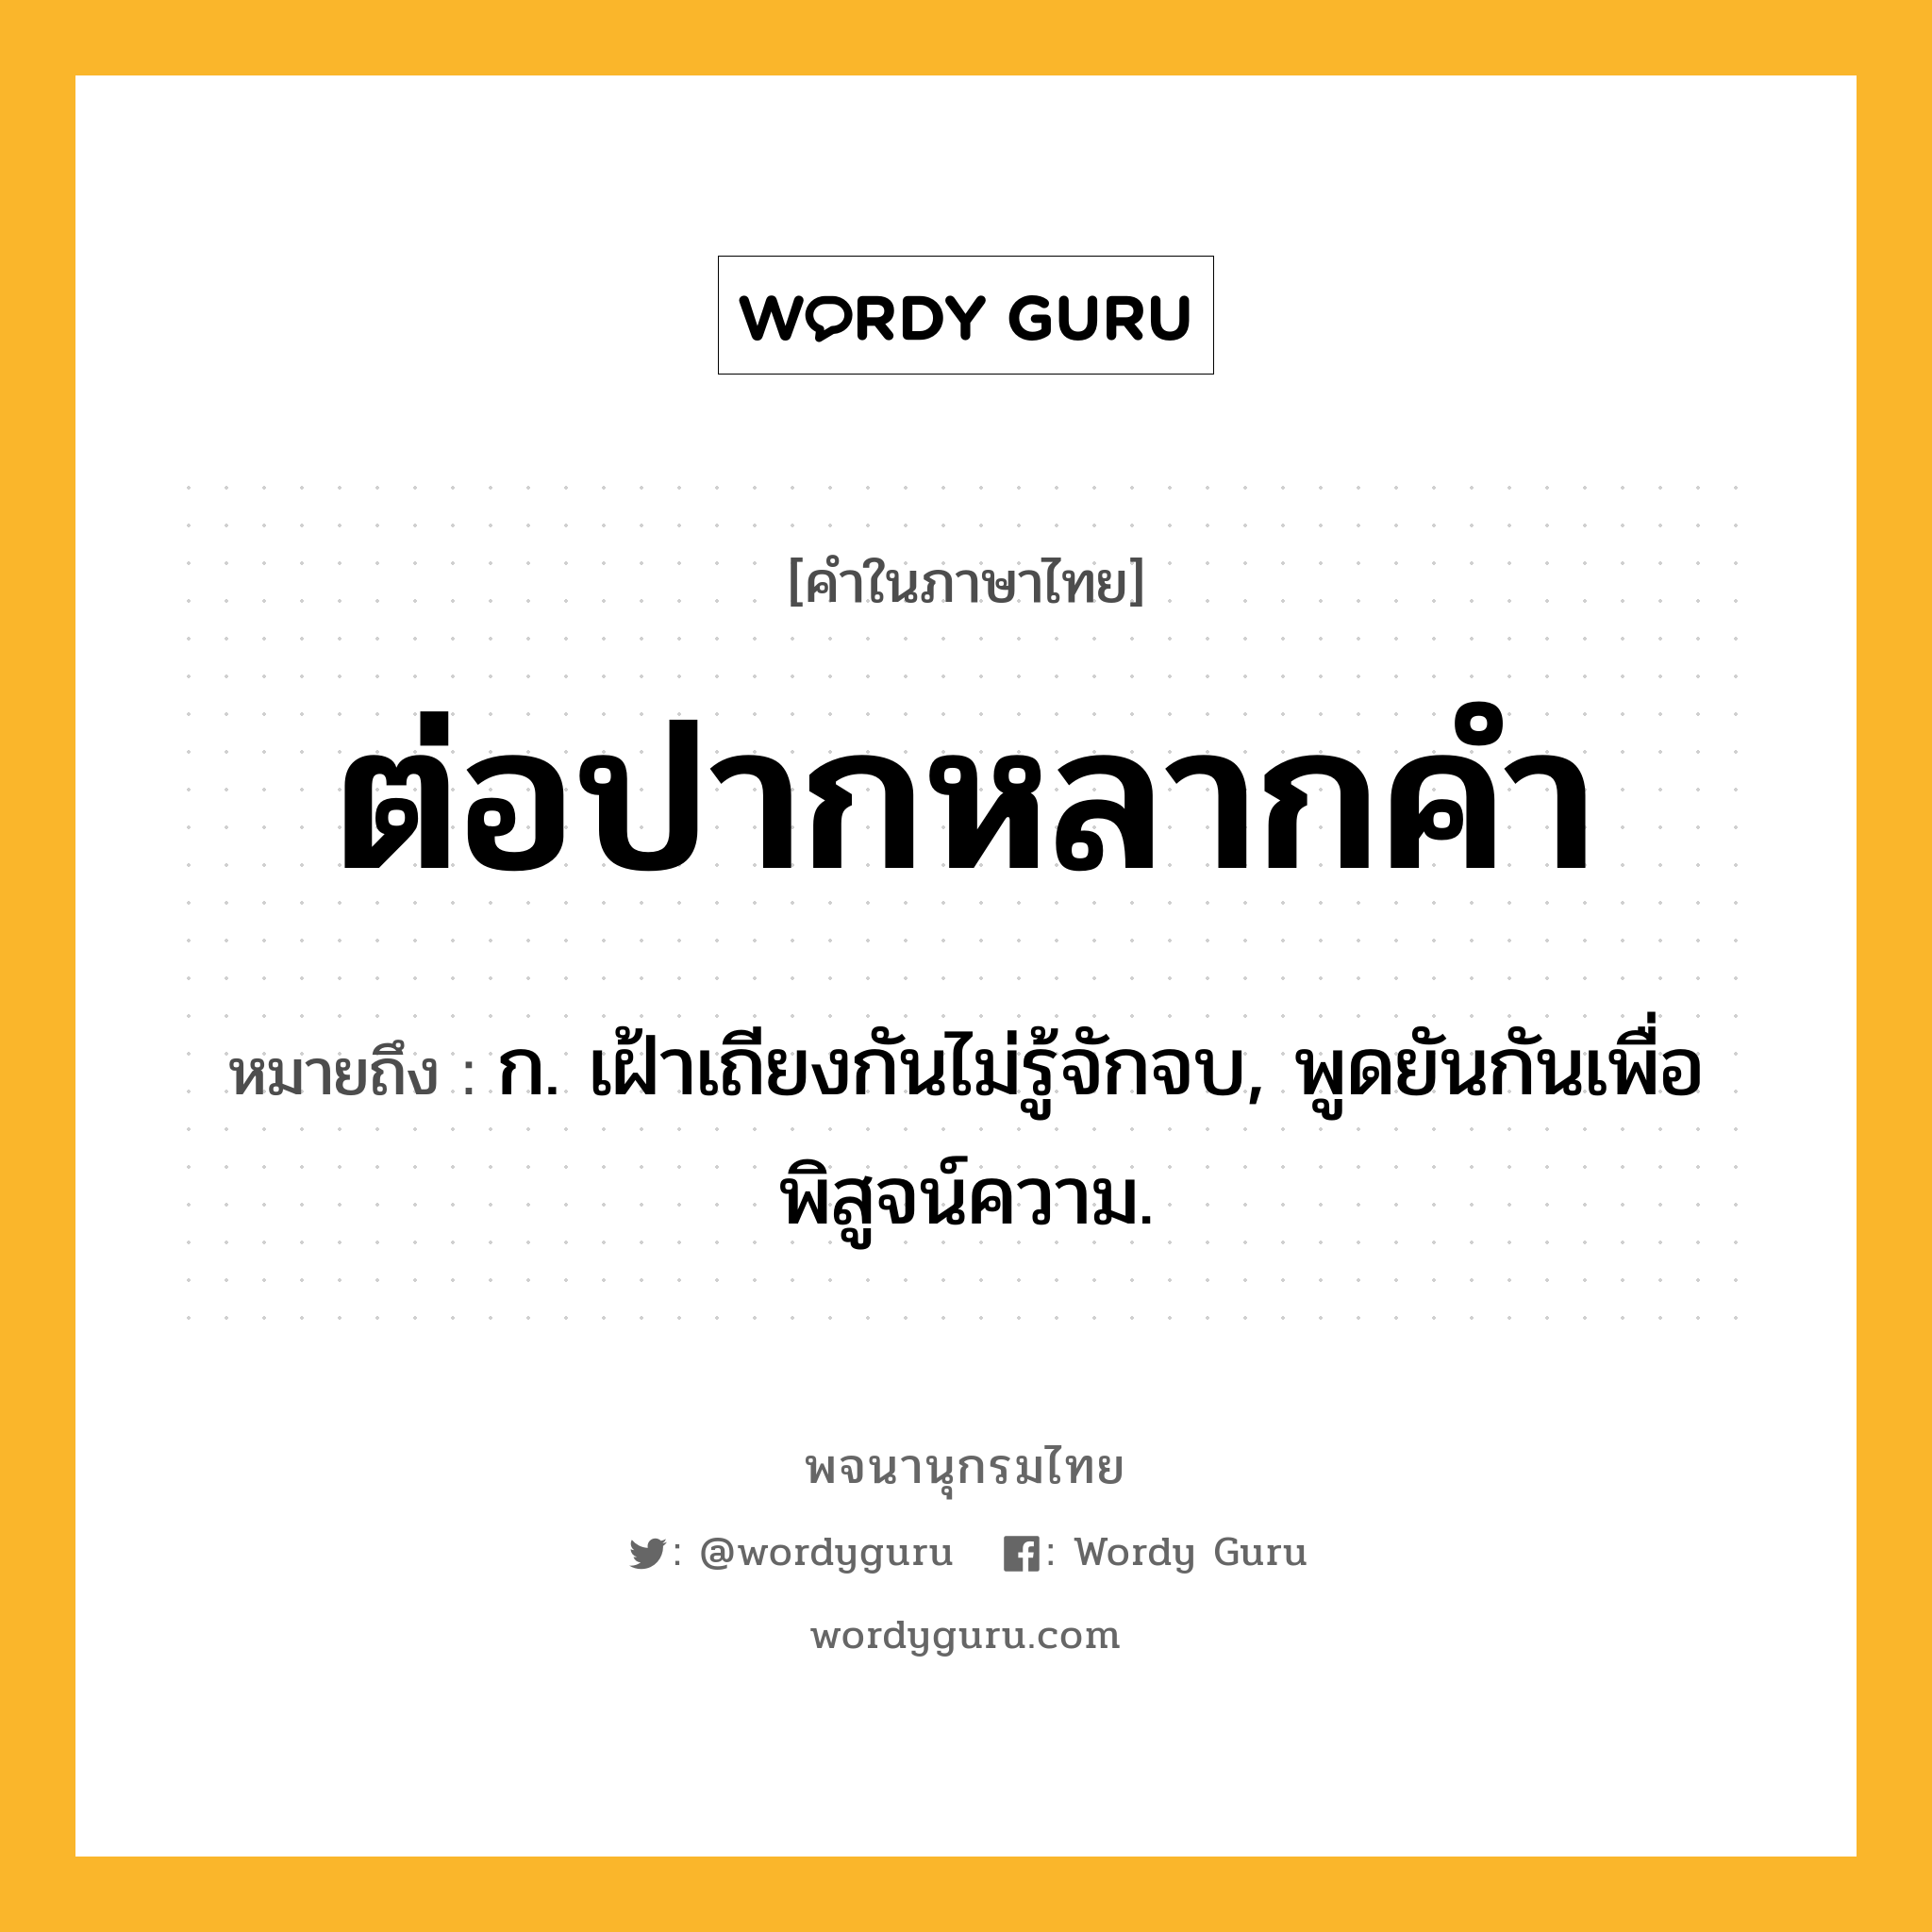 ต่อปากหลากคำ ความหมาย หมายถึงอะไร?, คำในภาษาไทย ต่อปากหลากคำ หมายถึง ก. เฝ้าเถียงกันไม่รู้จักจบ, พูดยันกันเพื่อพิสูจน์ความ.